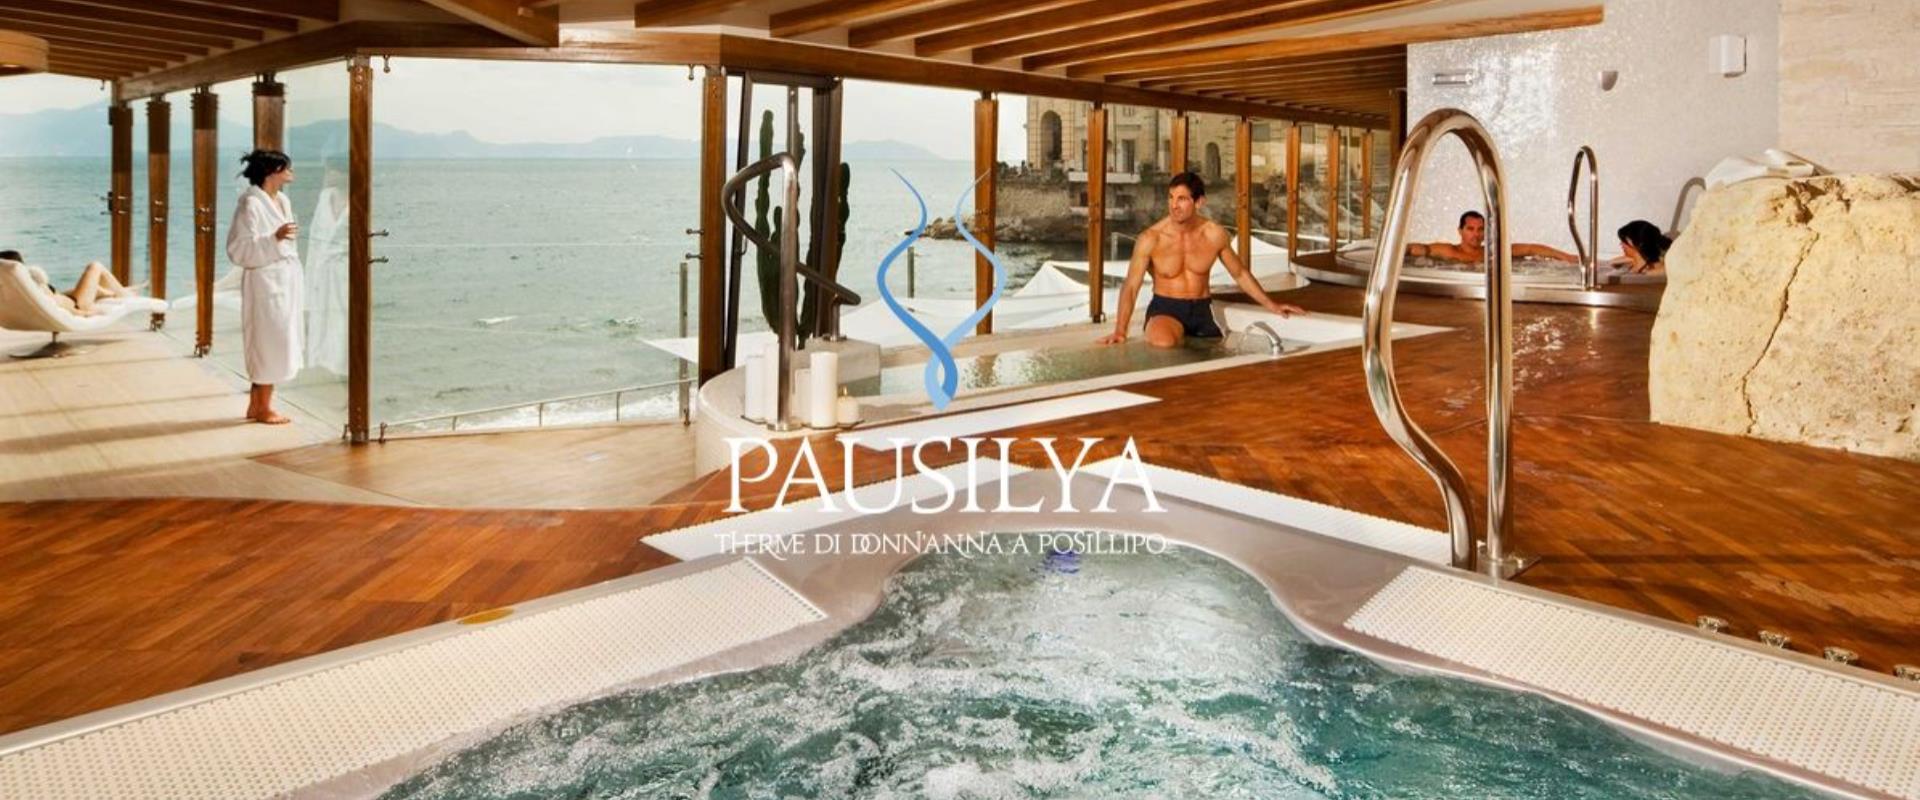 Откройте для себя спа Pausilya договоренность с отеля Paradiso: любое лечение для благосостояния вашего тела!